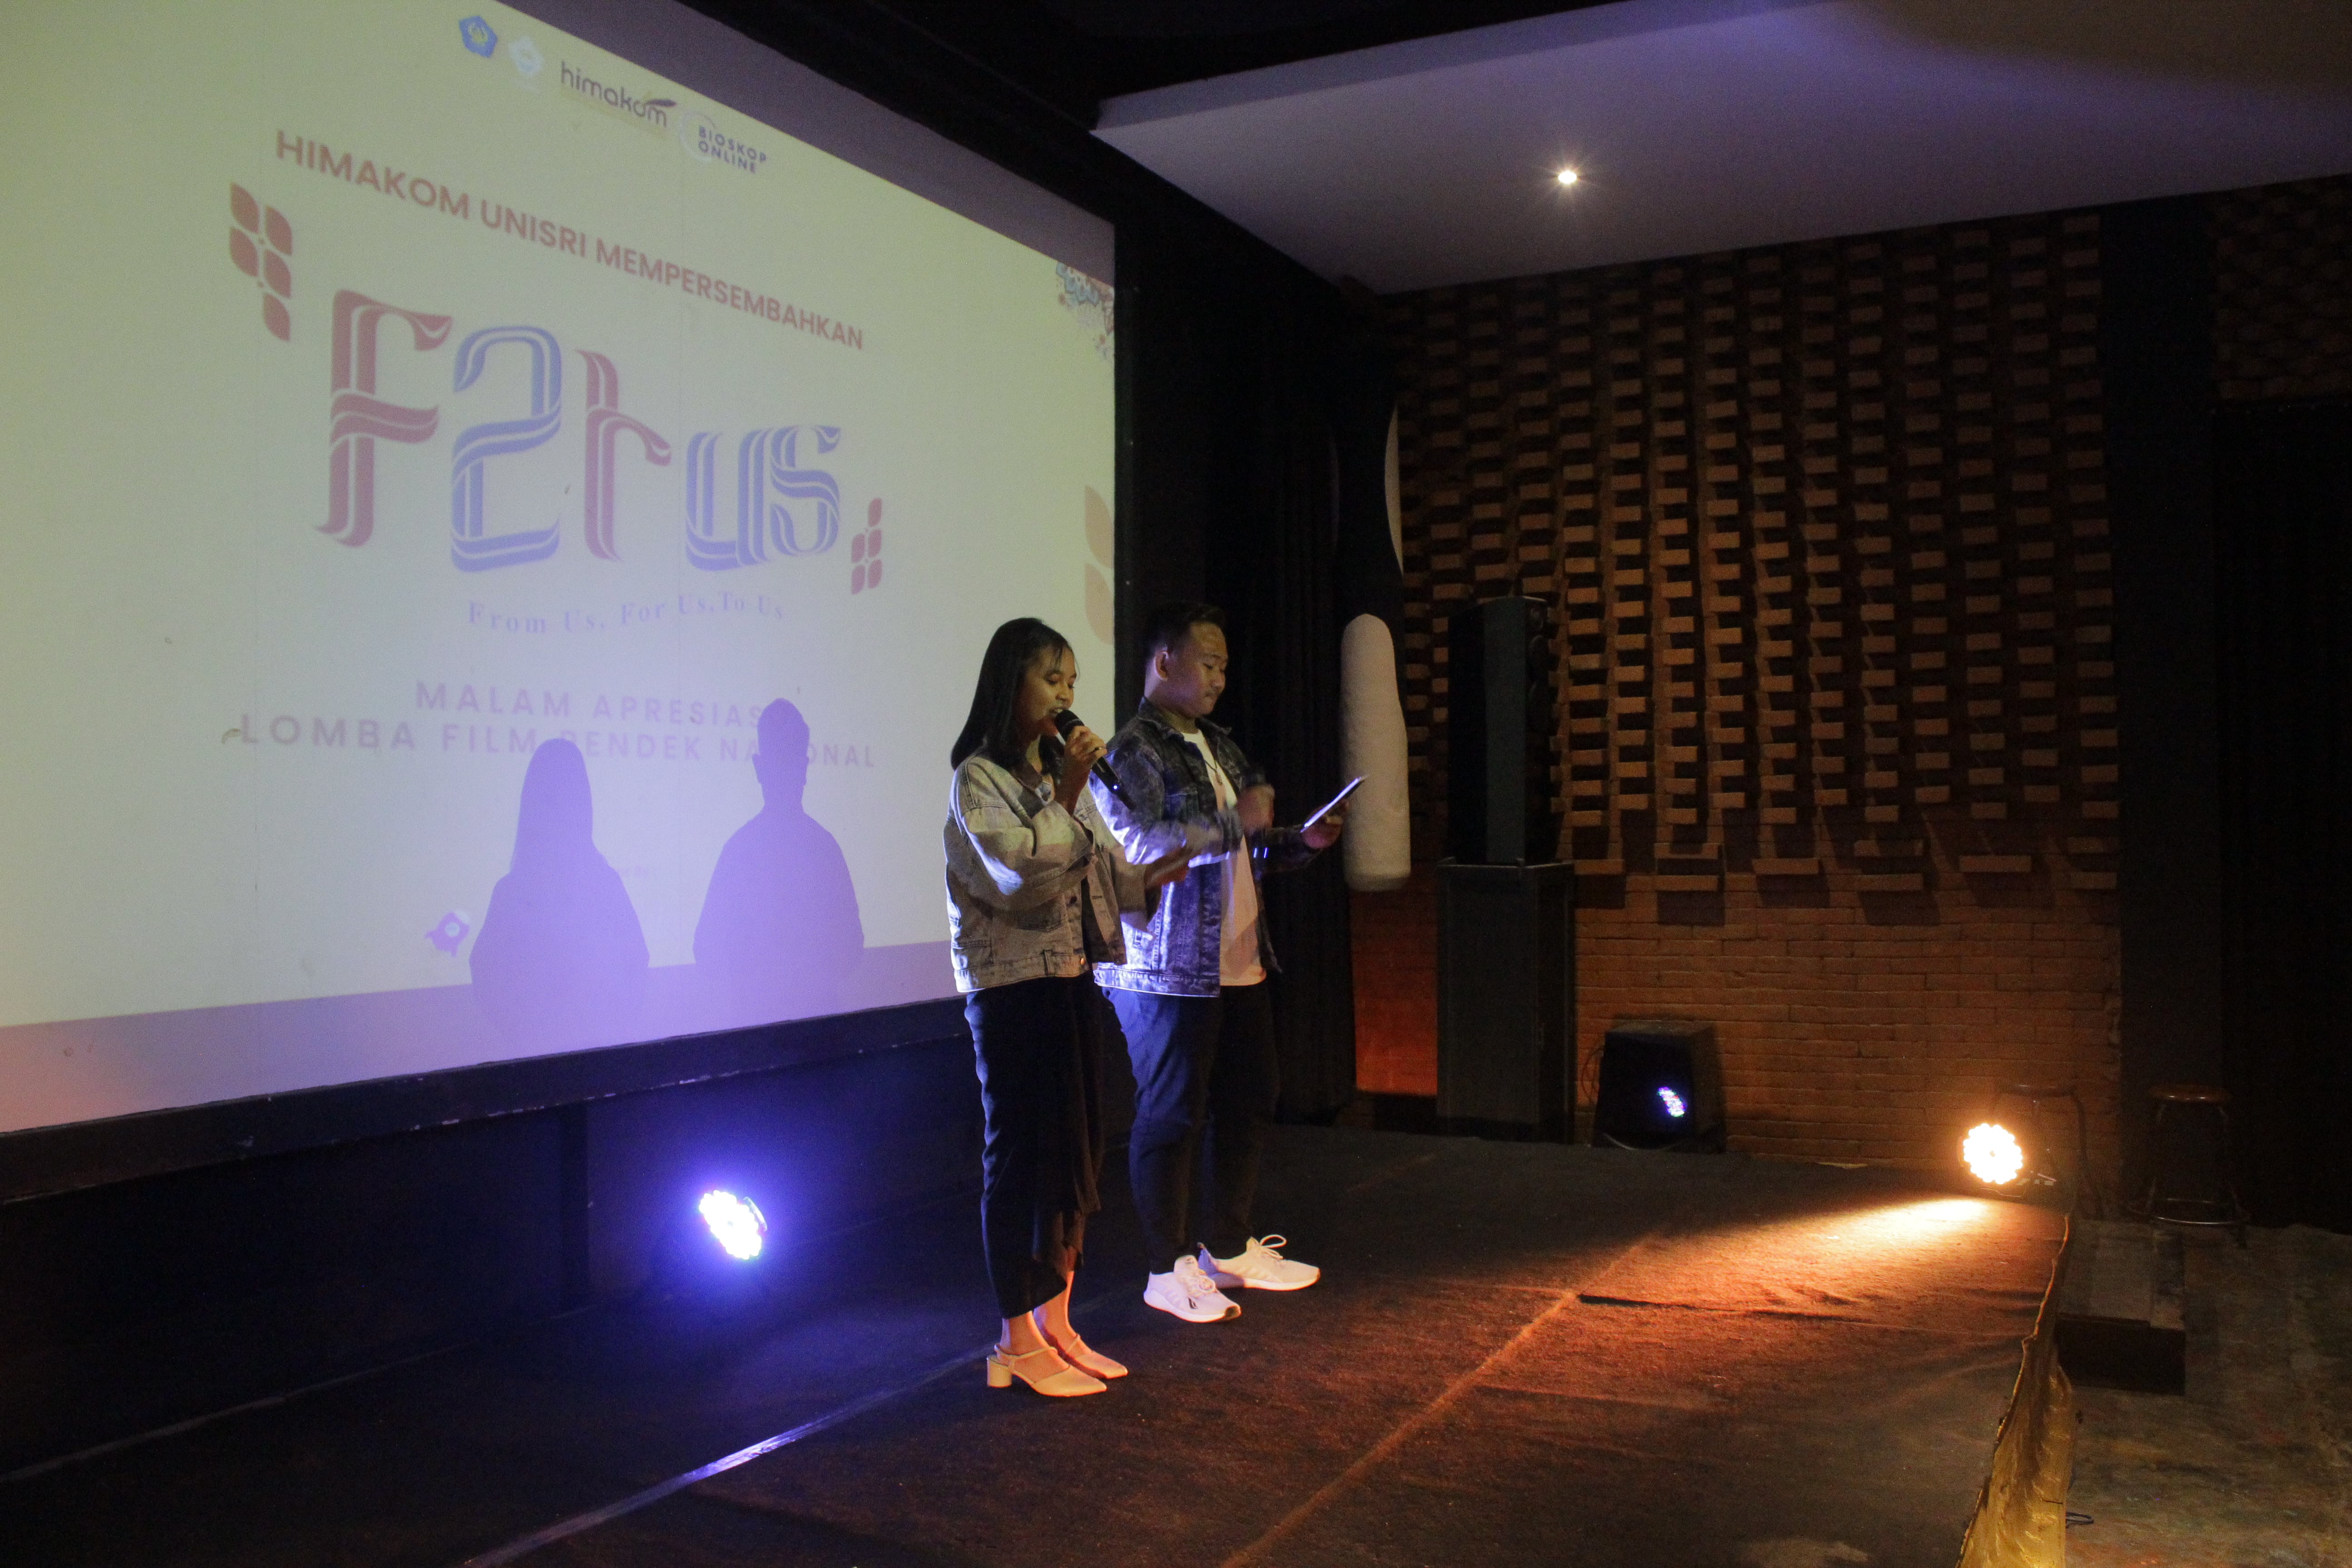 Himakom Unisri Sukses Mengadakan Lomba Film Tingkat Nasional dalam Acara F2TUS